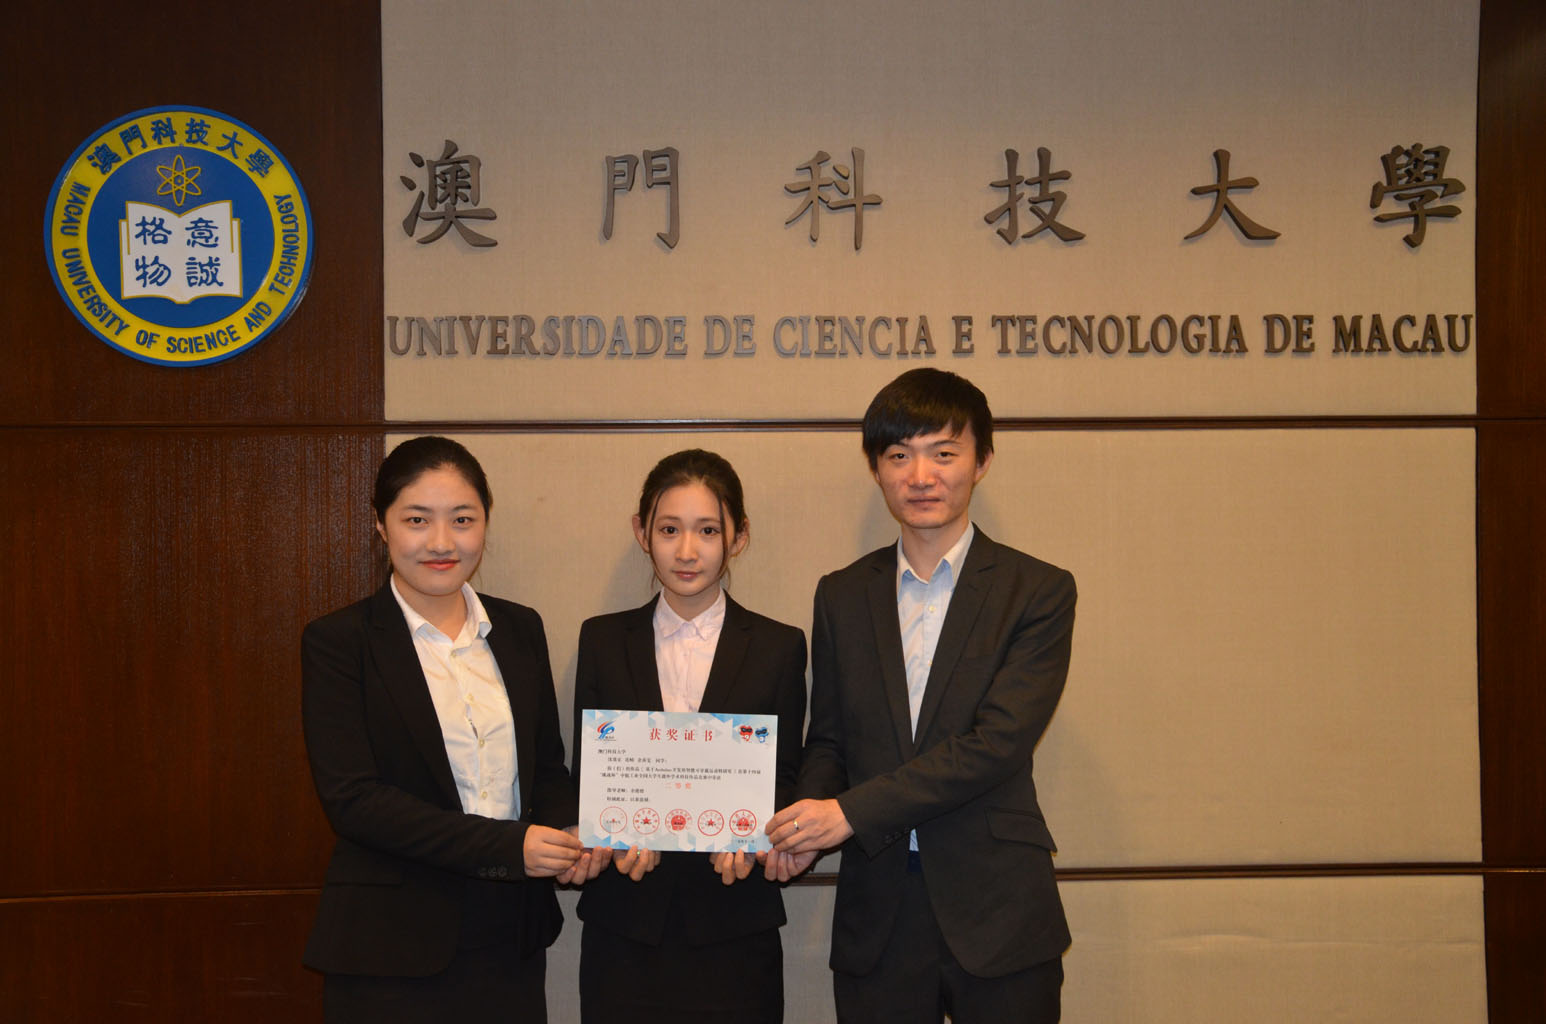 P2 Yu Shan Wen Fan Qiao and Shen Zhang Le won the Second Place Prize